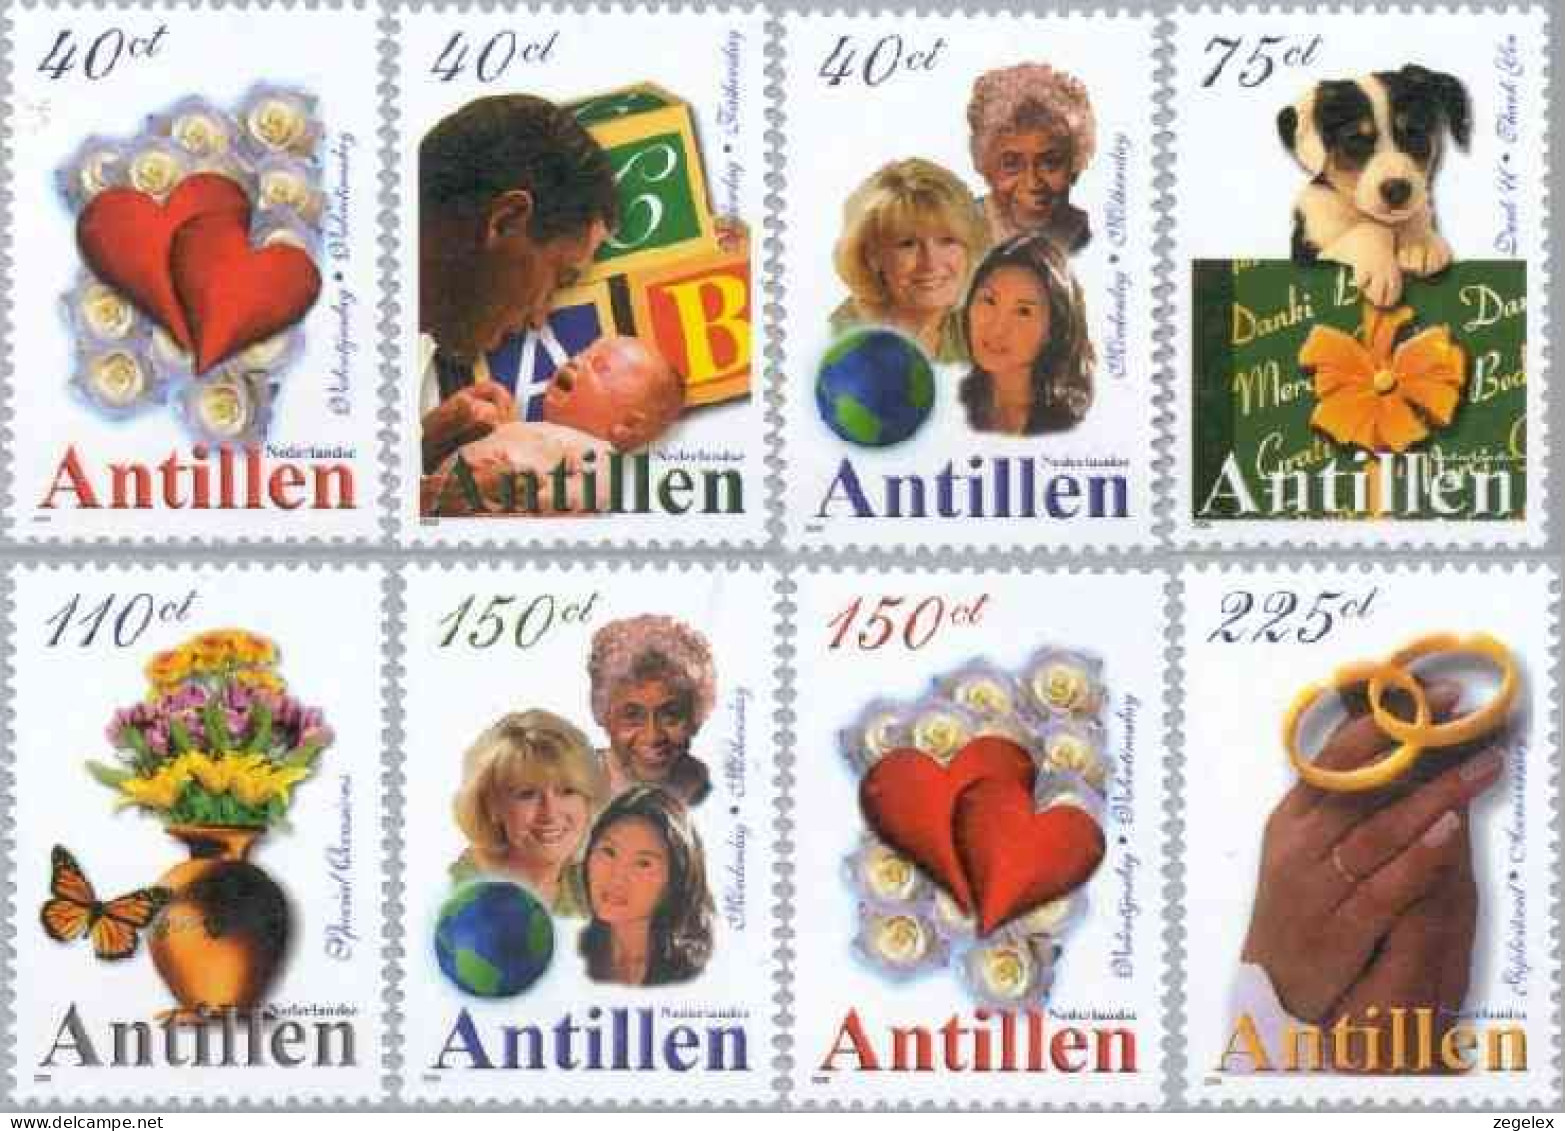 Ned Antillen 2000 Gelegenheidszegels, Dog NVPH 1298, MNH** Postfris - Curacao, Netherlands Antilles, Aruba